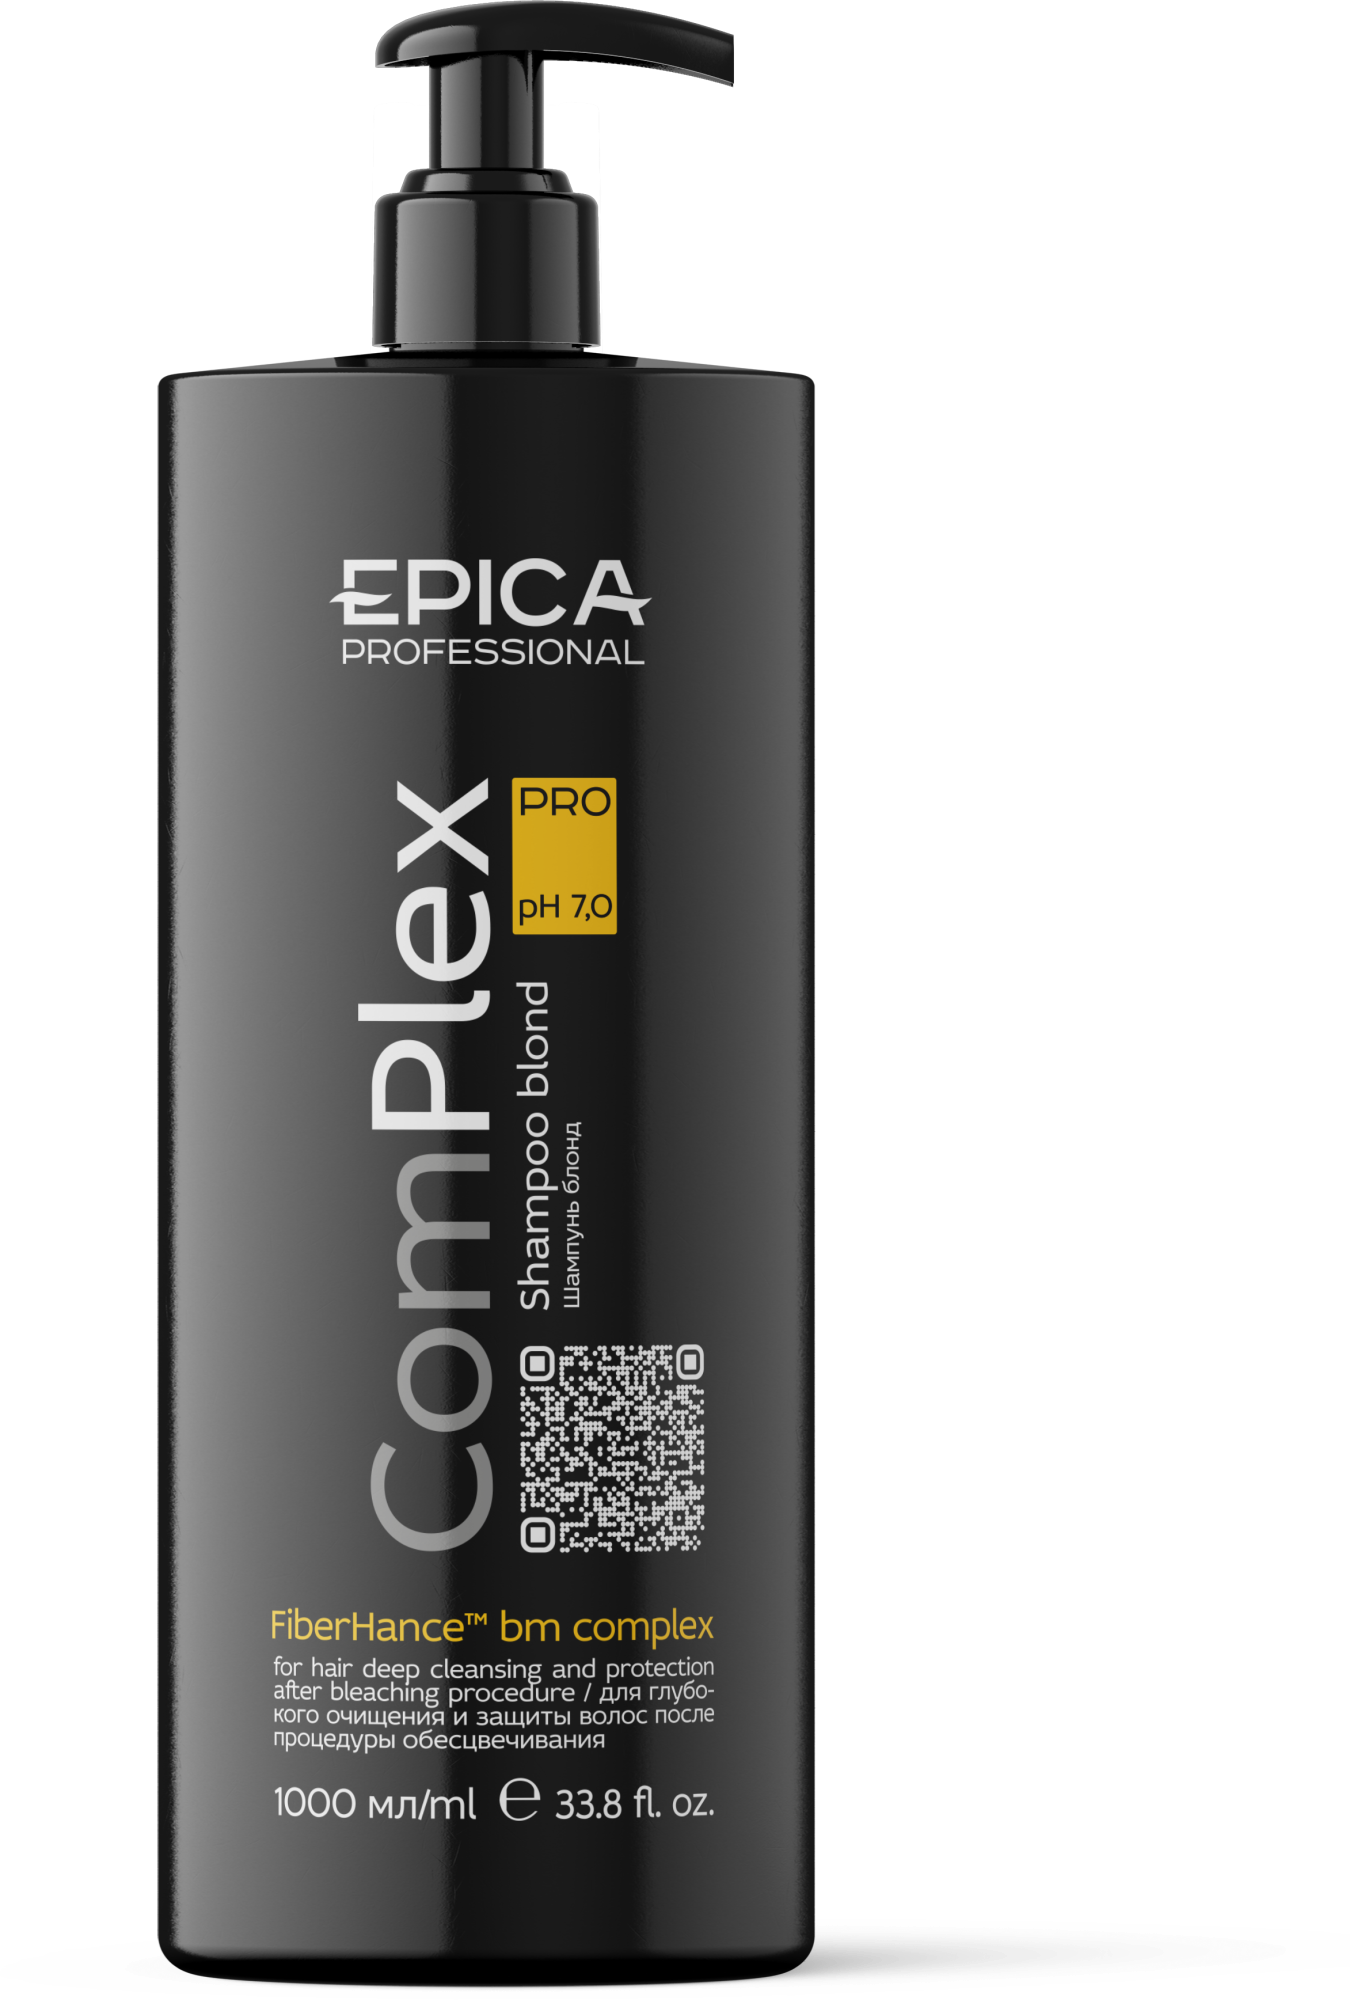 EPICA Professional ComPlex PRO Шампунь для глубокого очищения и защиты волос, 1000 мл